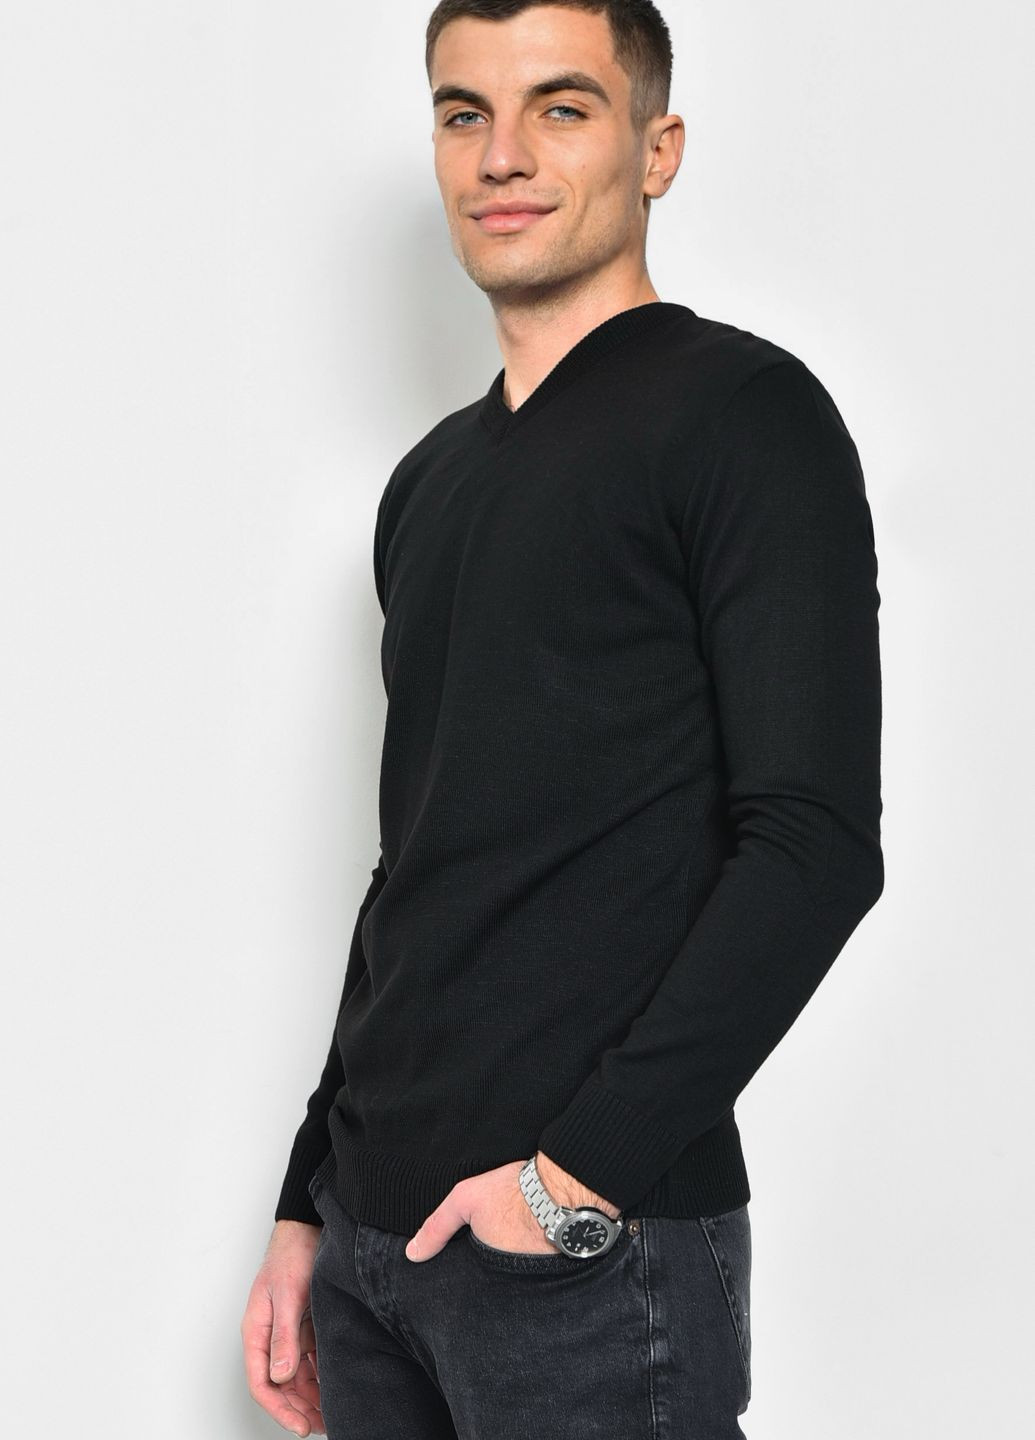 Чорний демісезонний светр чоловічий напівбатальний чорного кольору пуловер Let's Shop